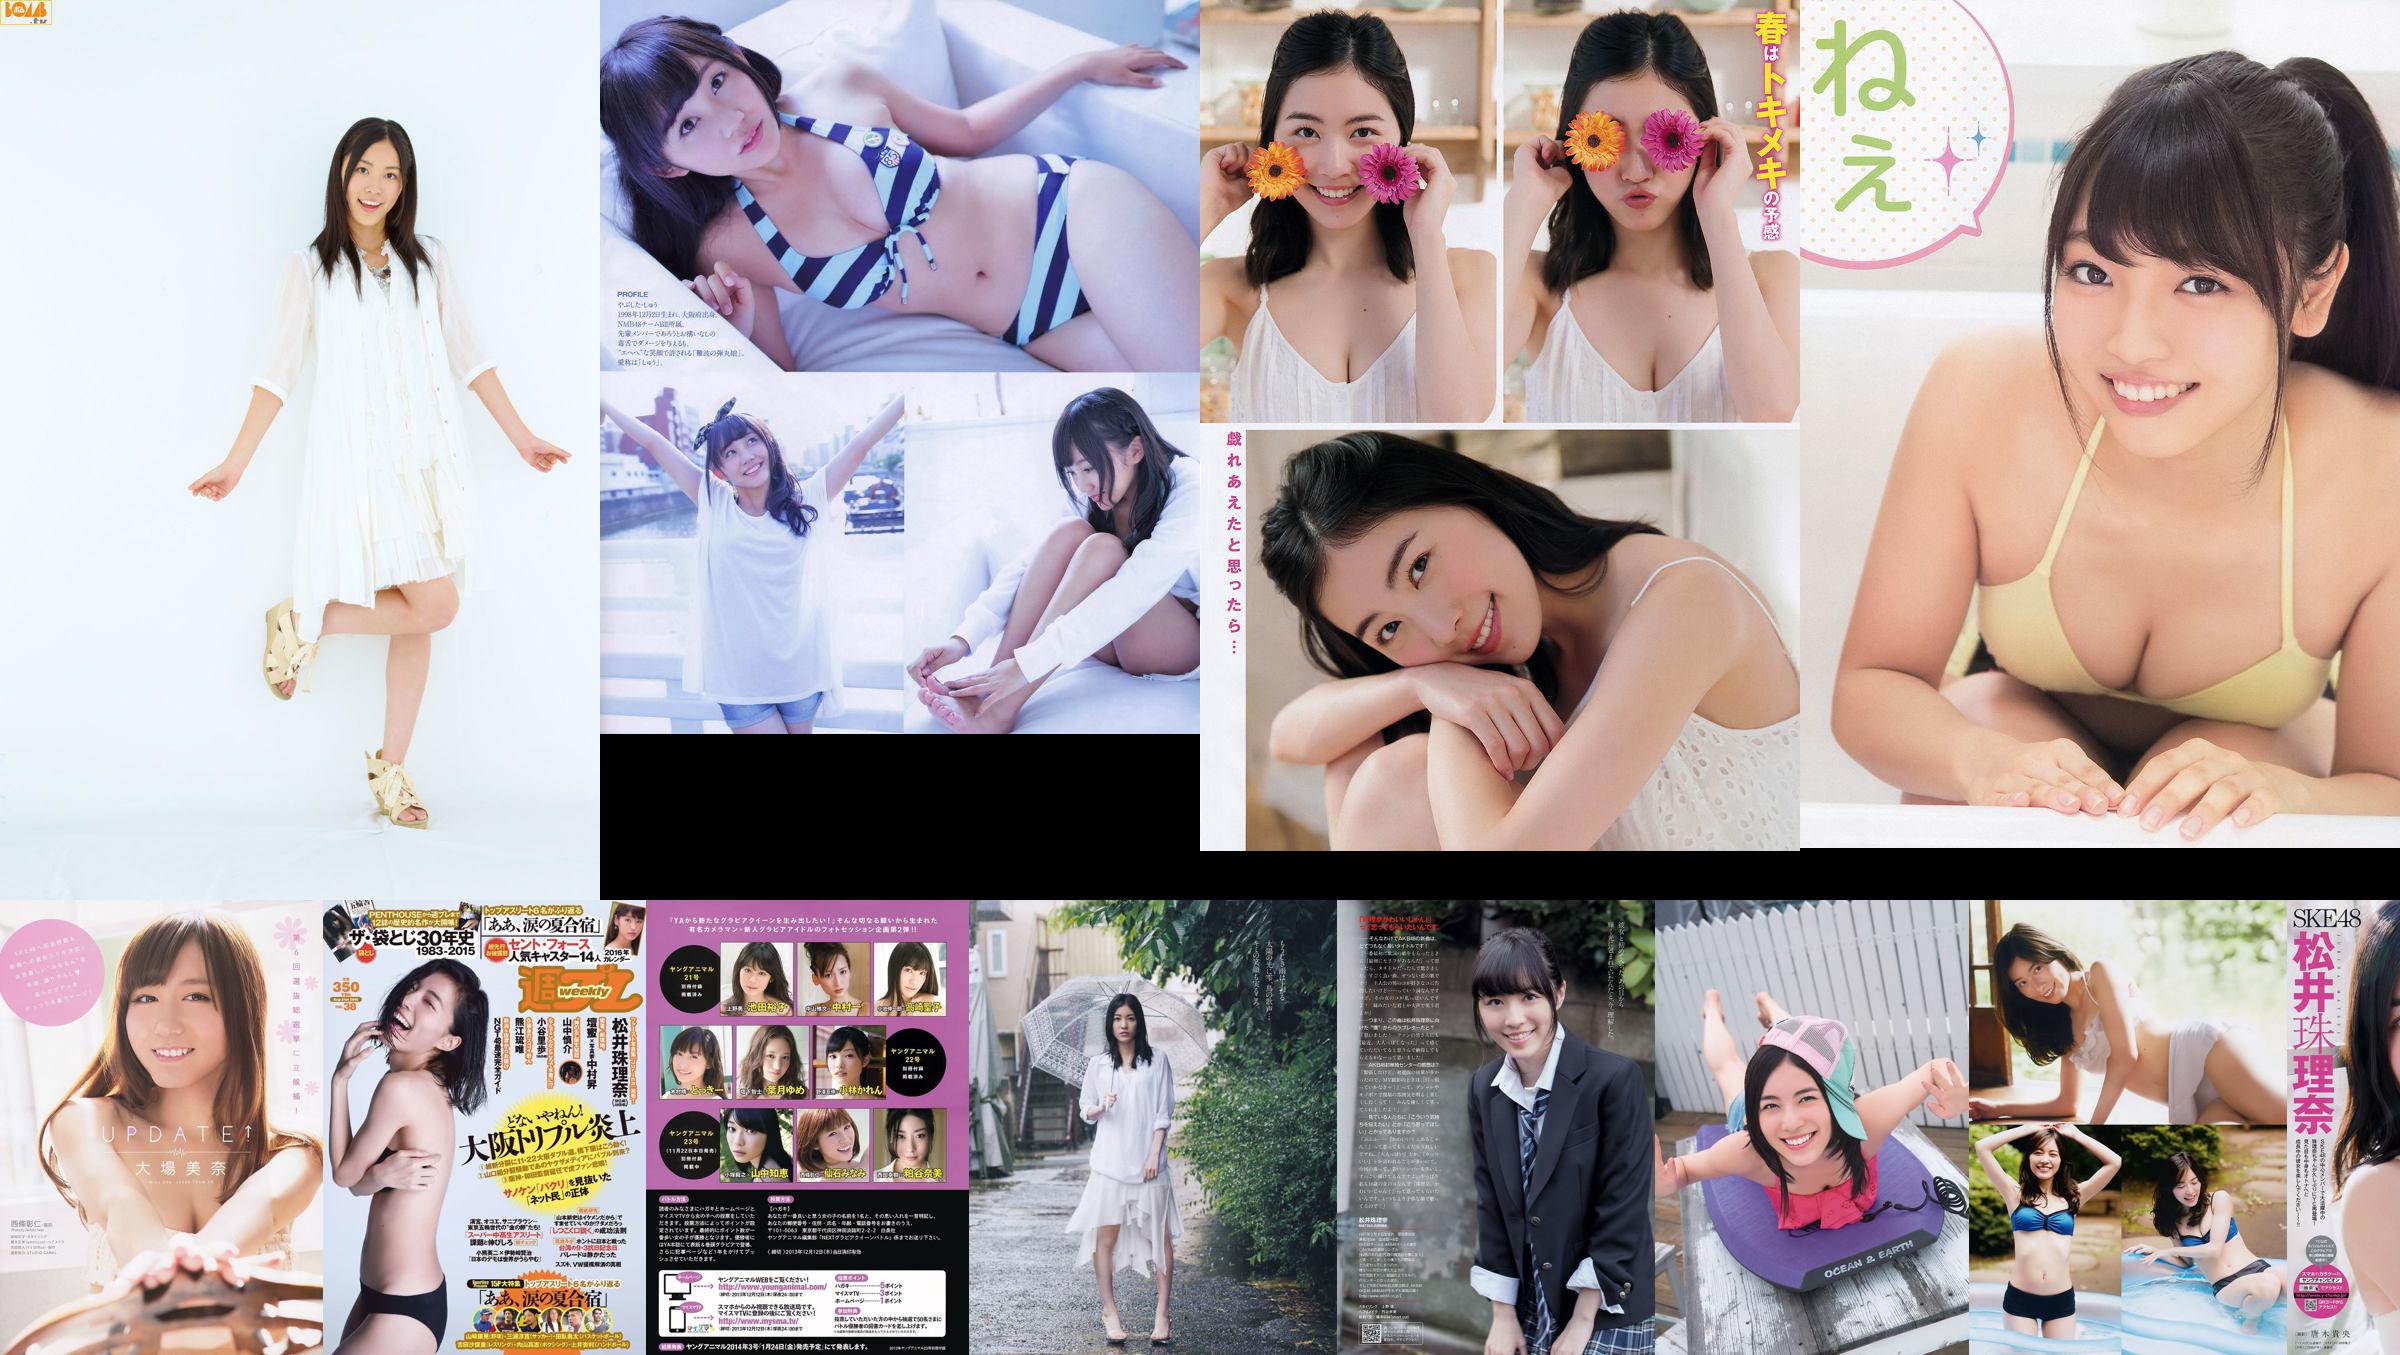 [Revista joven] YM7 Jurina Matsui NMB48 2011 No 27 Fotografía No.2d5f76 Página 3